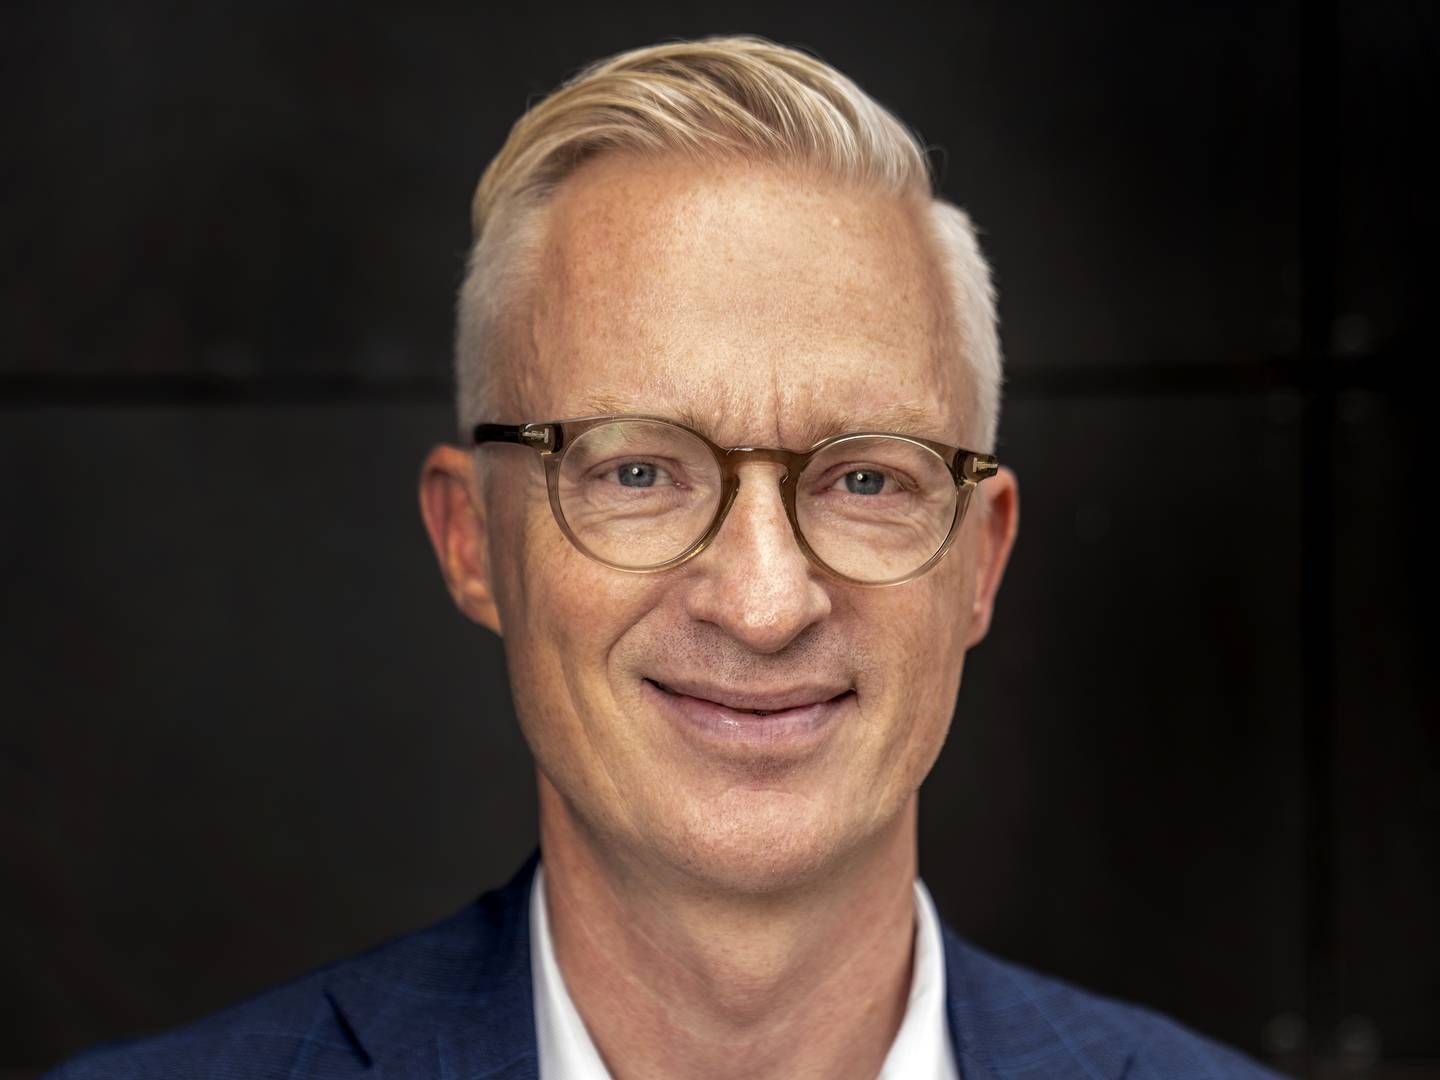 Koncernchef i Tryg, Morten Hübbe, er i fuld gang med at transformere RSA Skandinaviens investeringsstrategi. | Foto: Stine Bidstrup/ERH